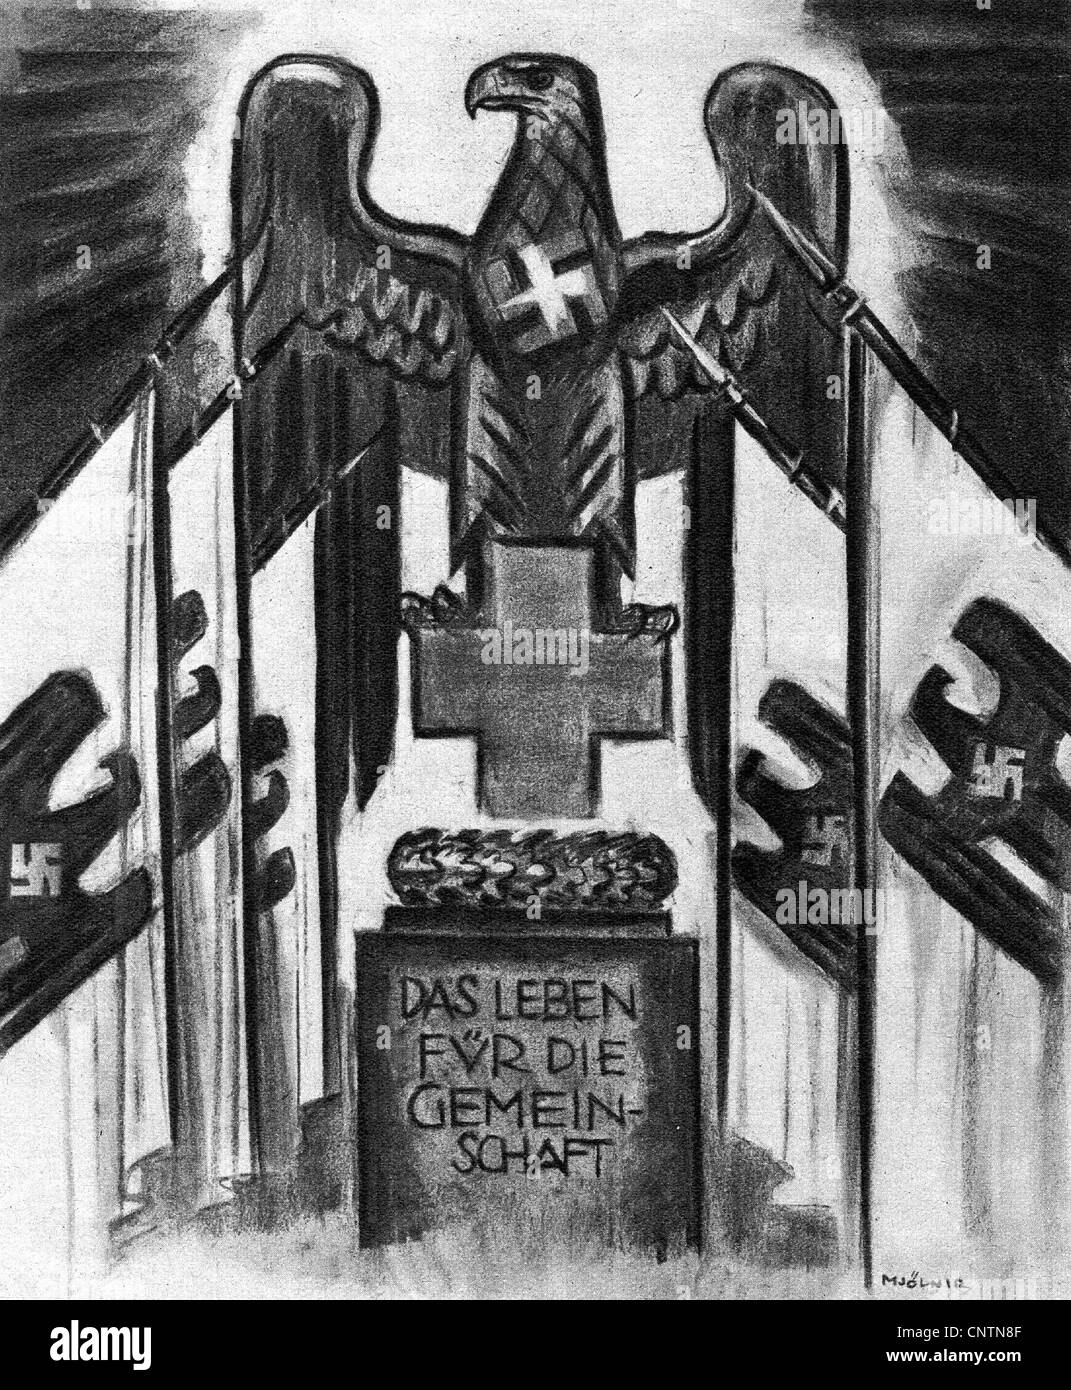 National-socialisme / nazisme, propagande, illustration, signe de la Croix-Rouge avec l'aigle nazi et les drapeaux de la croix gammée, devise 'la vie pour la communauté', dessin par Mjoelnir, 1939, droits additionnels-Clearences-non disponible Banque D'Images